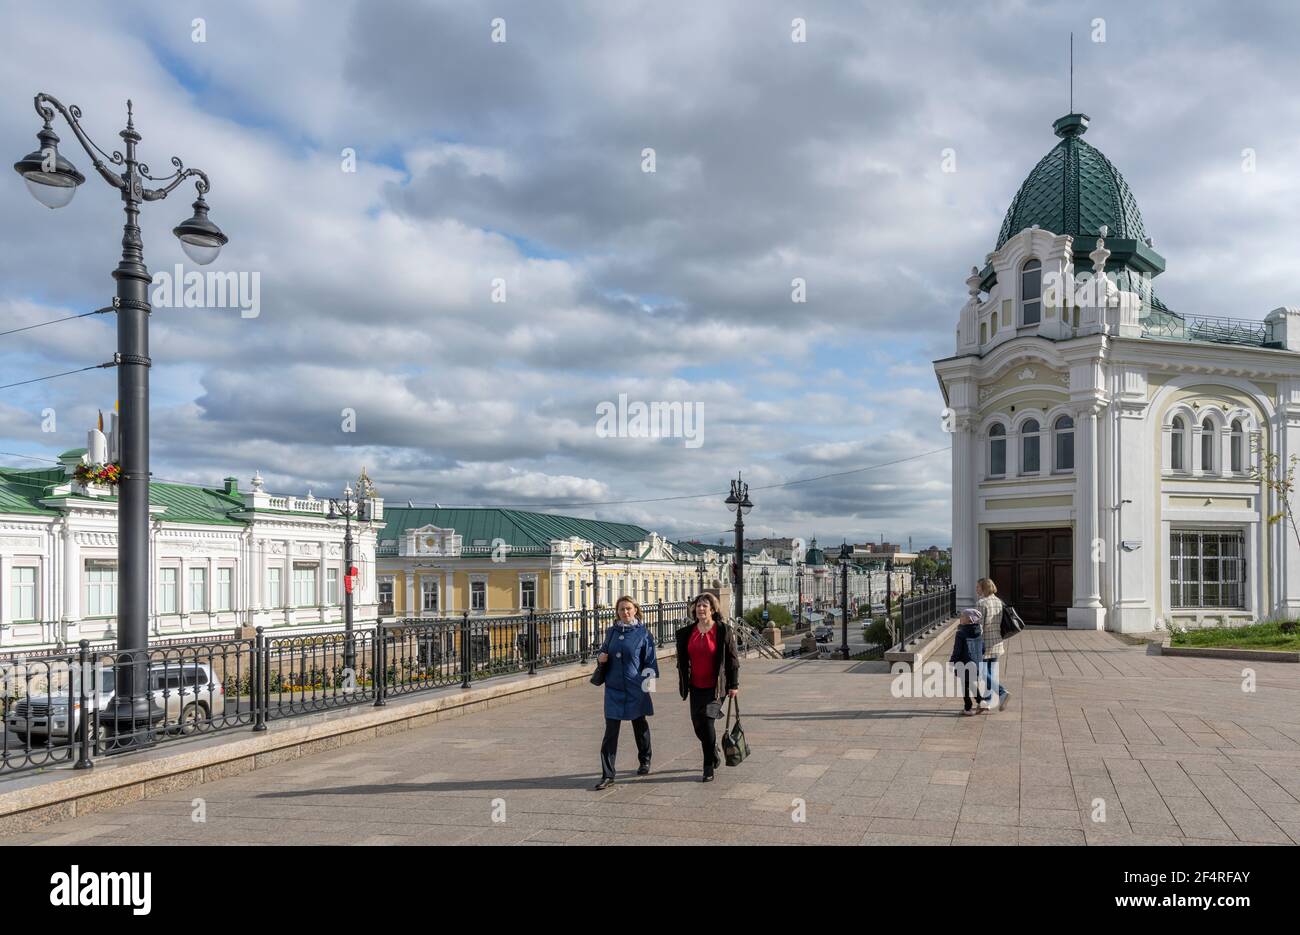 Omsk, Russland - 13. September 2019: Menschen in den Straßen von Omsk mit großen architektonischen Gebäuden, Sibirien, Russland. Stockfoto